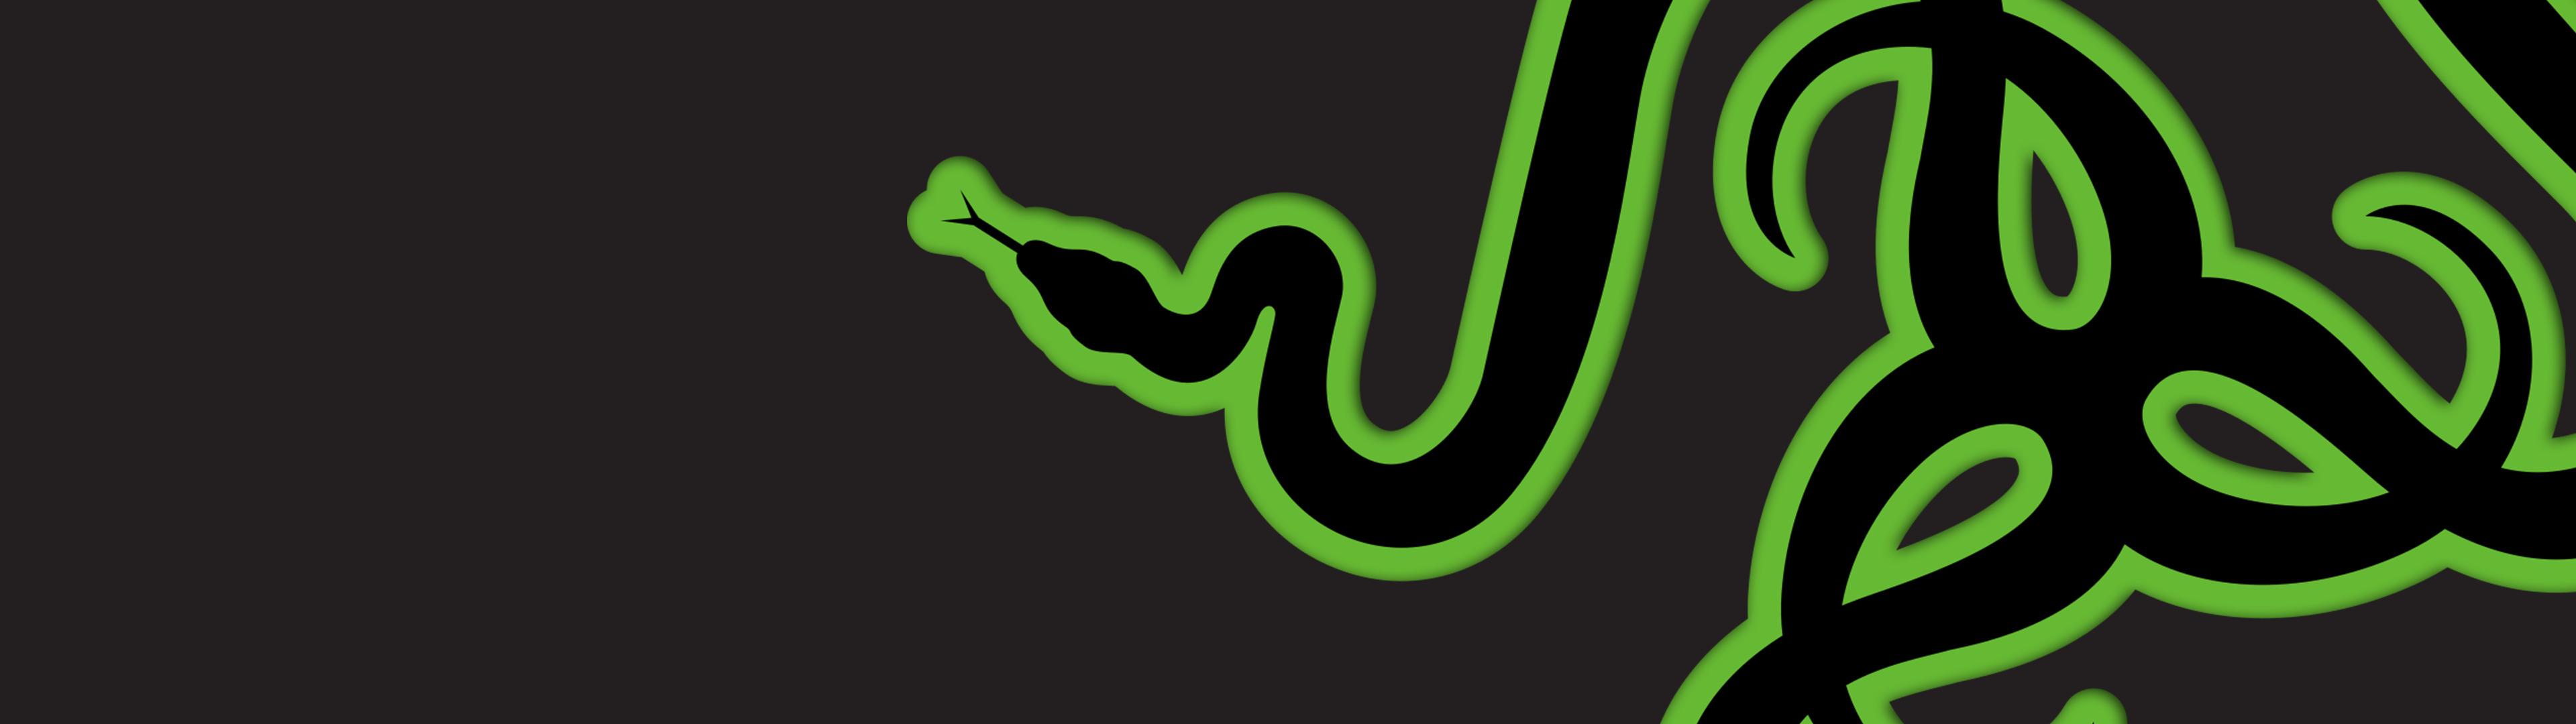 Razer, Green, Dark, Snake Wallpaper HD / Desktop and Mobile